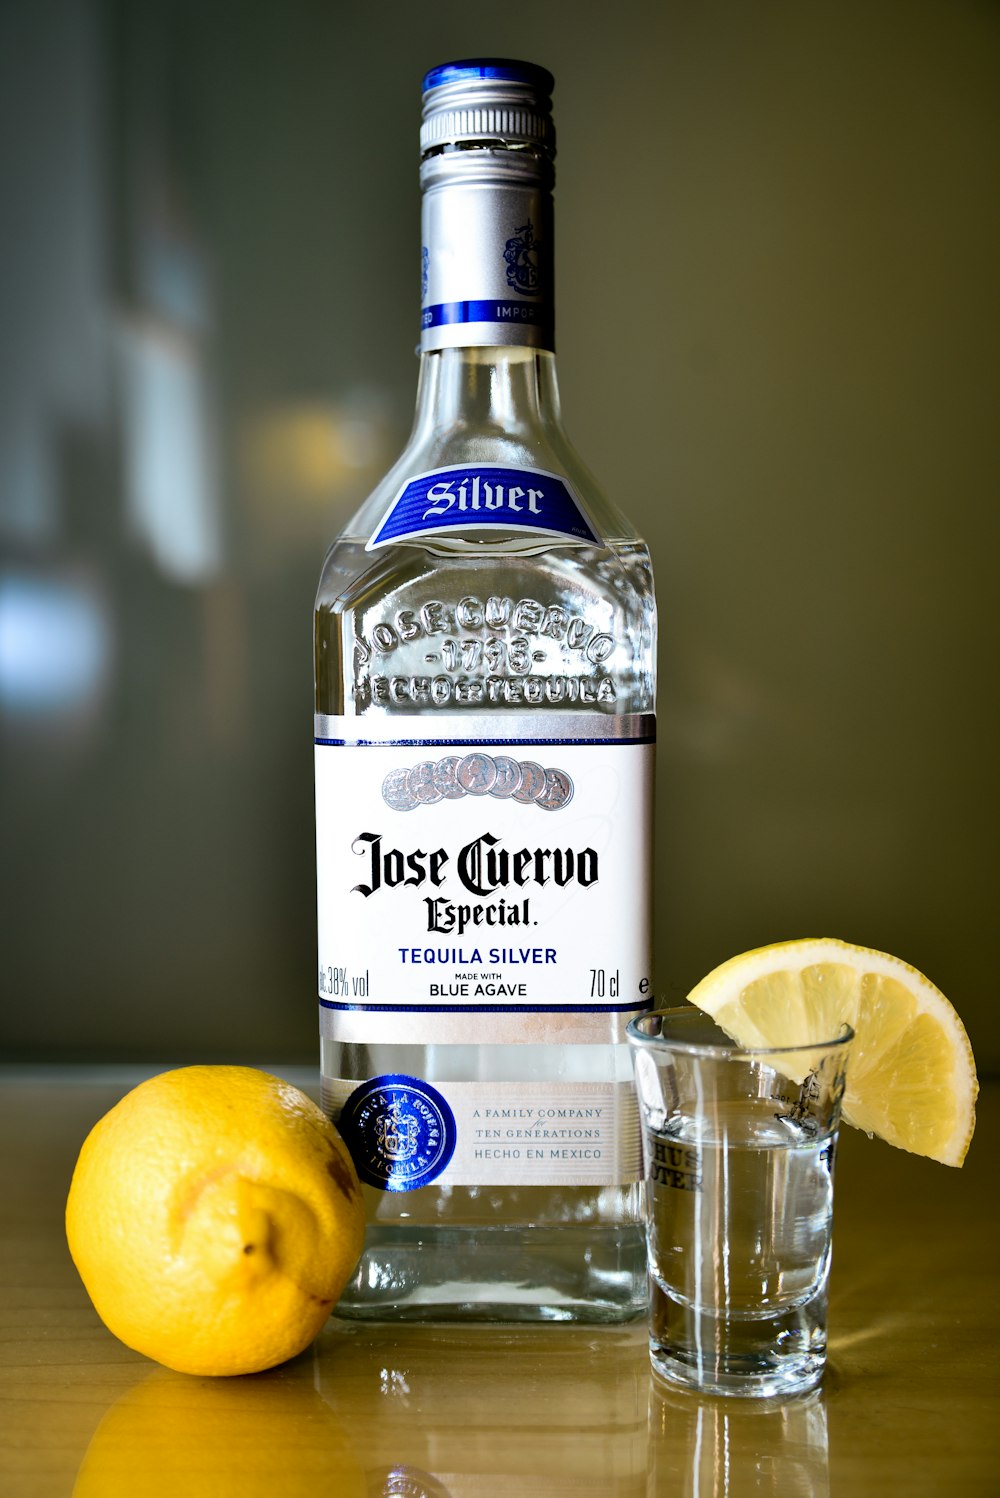 Nahaufnahme der versiegelten silbernen Tequila-Flasche Jose Cuervo